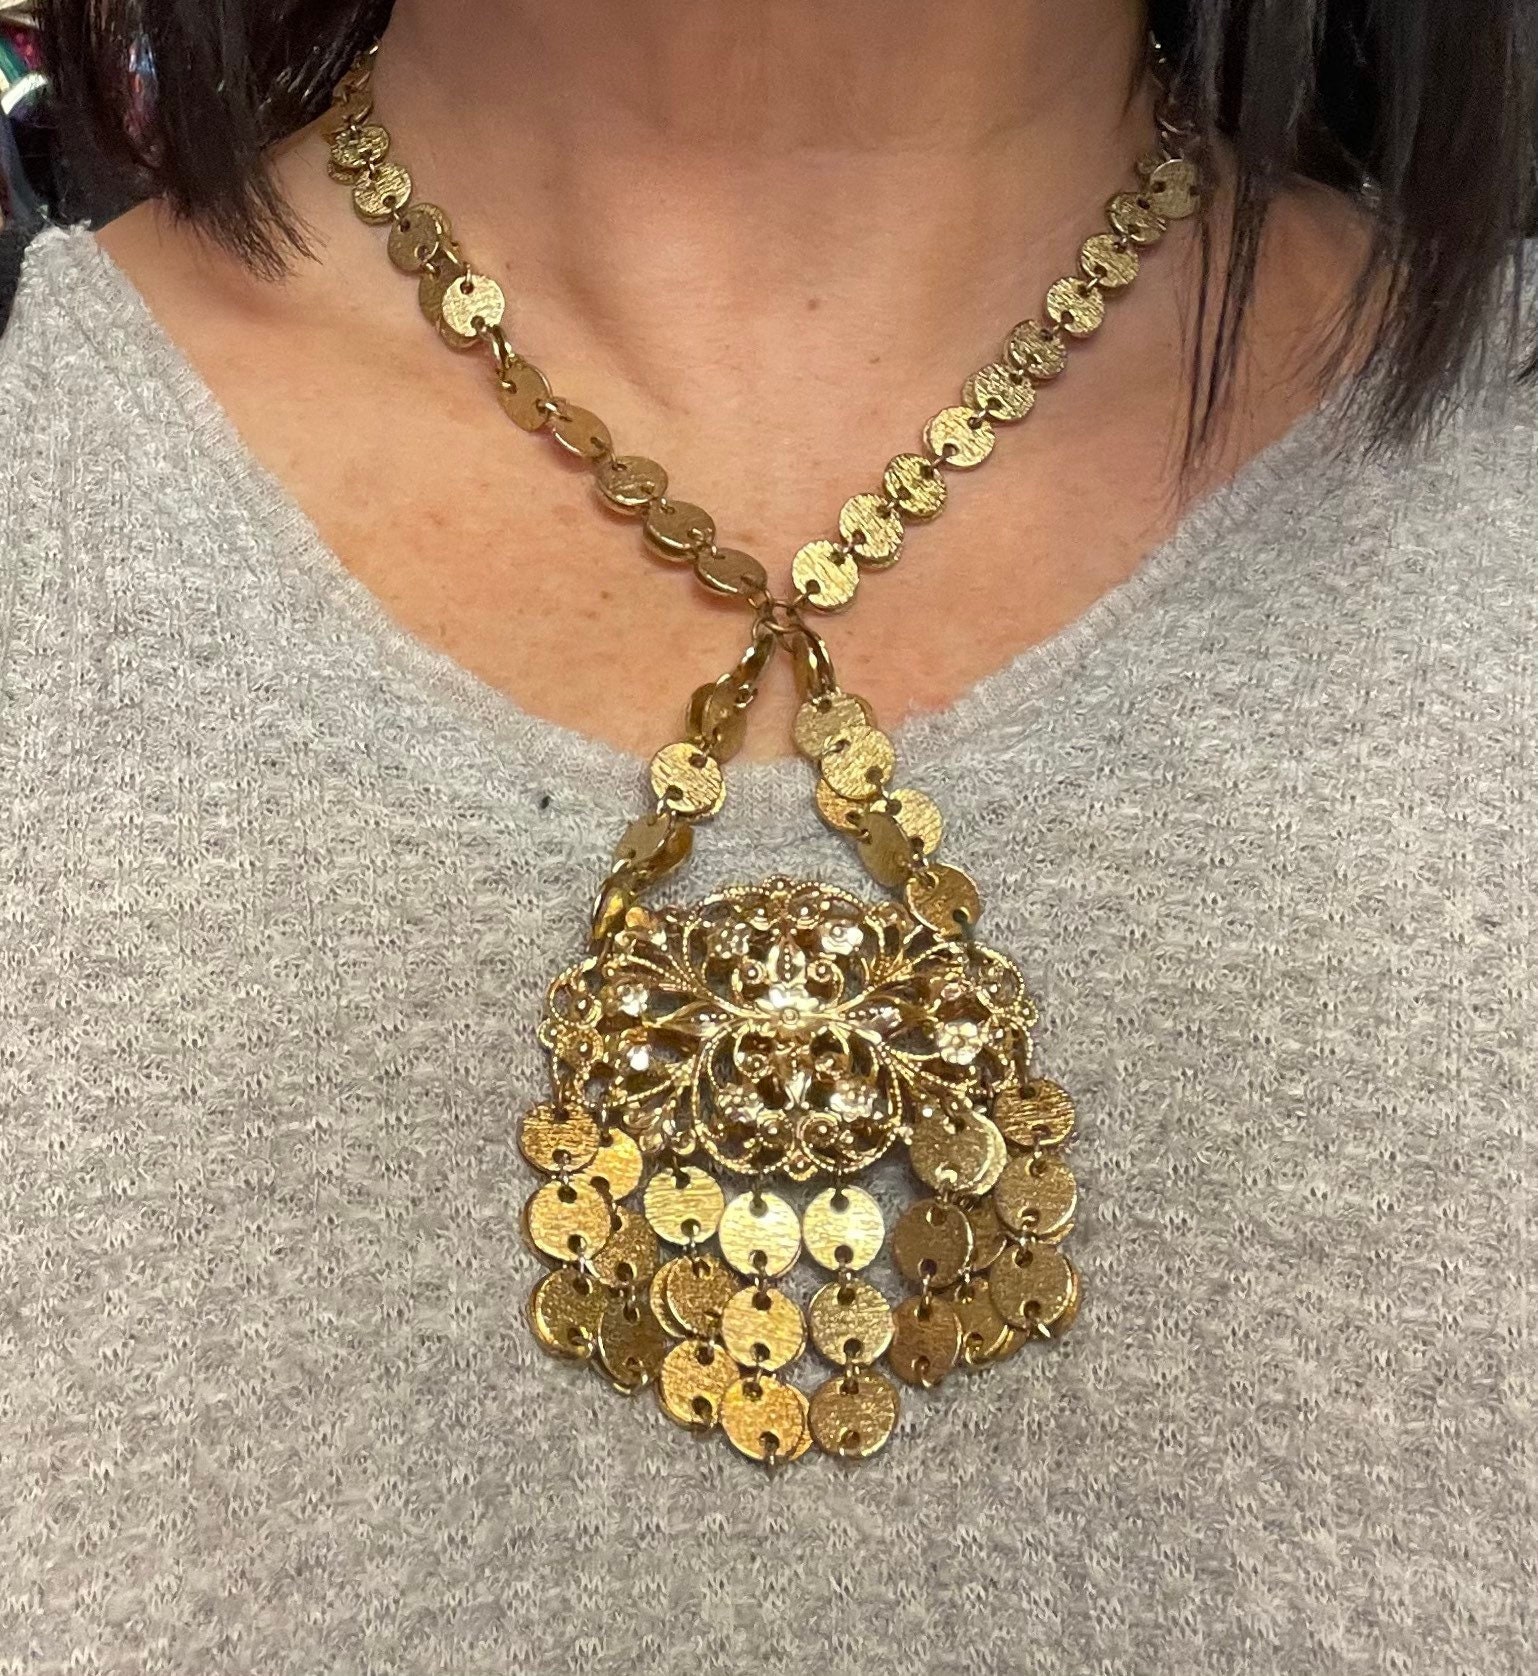 Cc earrings Chanel Gold in Metal - 21449868